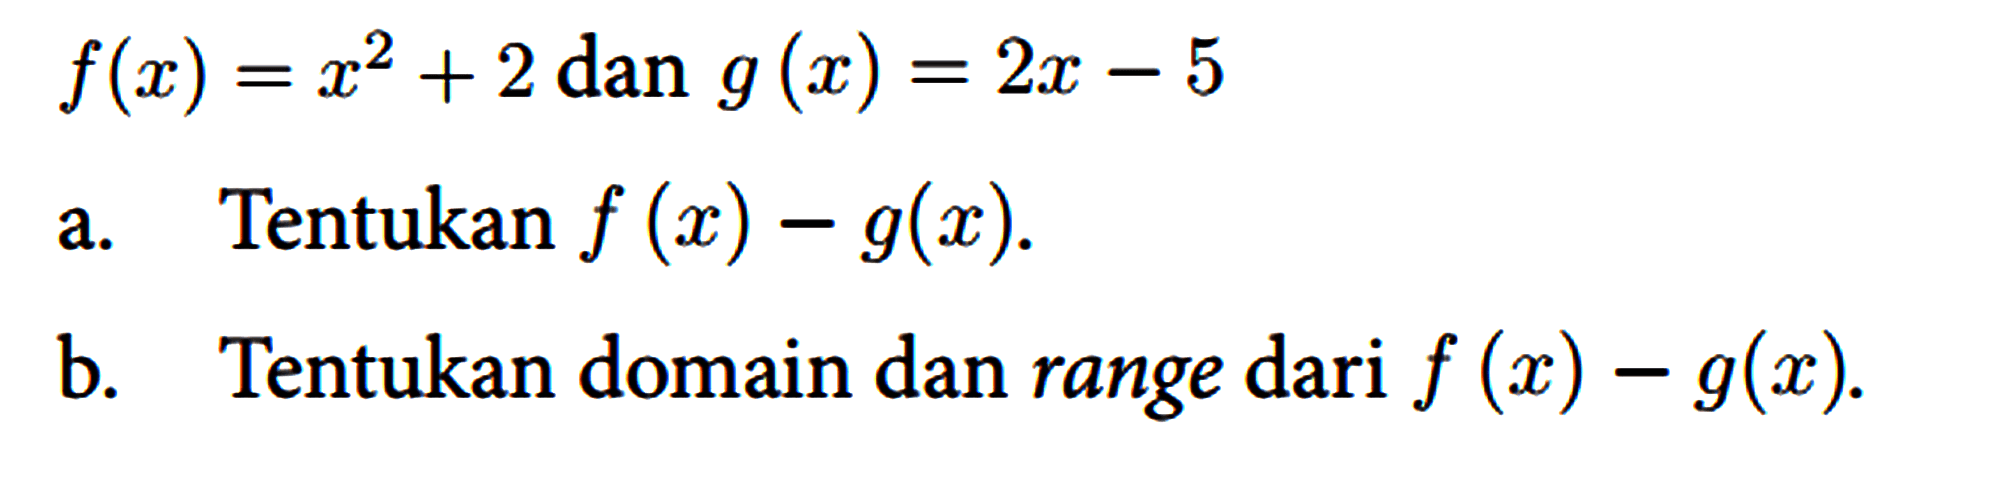 f(x)=x^(2)+2 { dan ) g(x)=2 x-5
 
 a. Tentukan f(x)-g(x) .
 b. Tentukan domain dan range dari f(x)-g(x) .